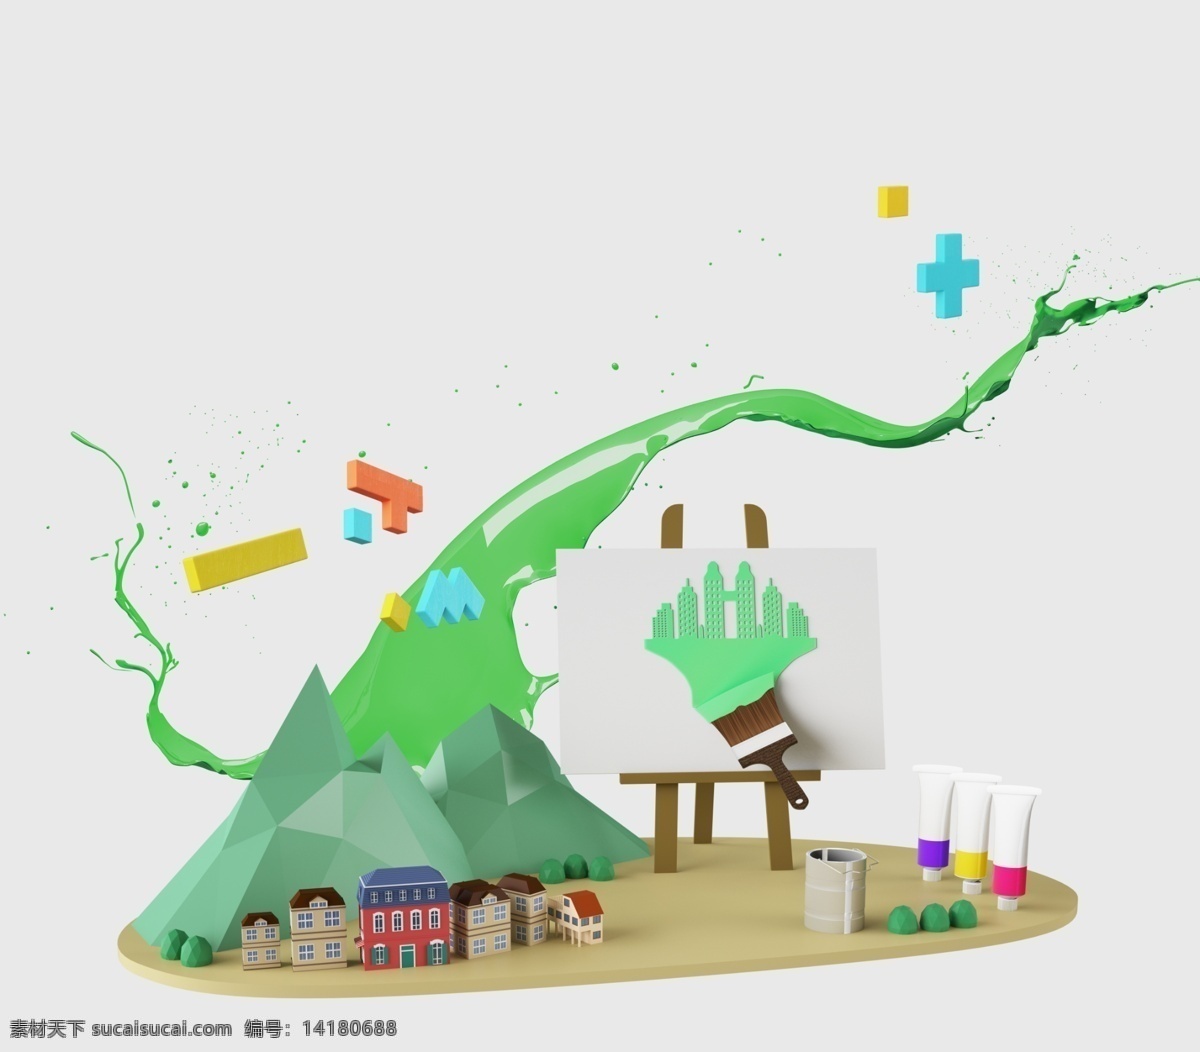 创意 儿童 智力开发 主题 海报 背景 图 未来 儿童素材 卡通 树 画板 想象 思维 开发智力 装饰元素 元素设计